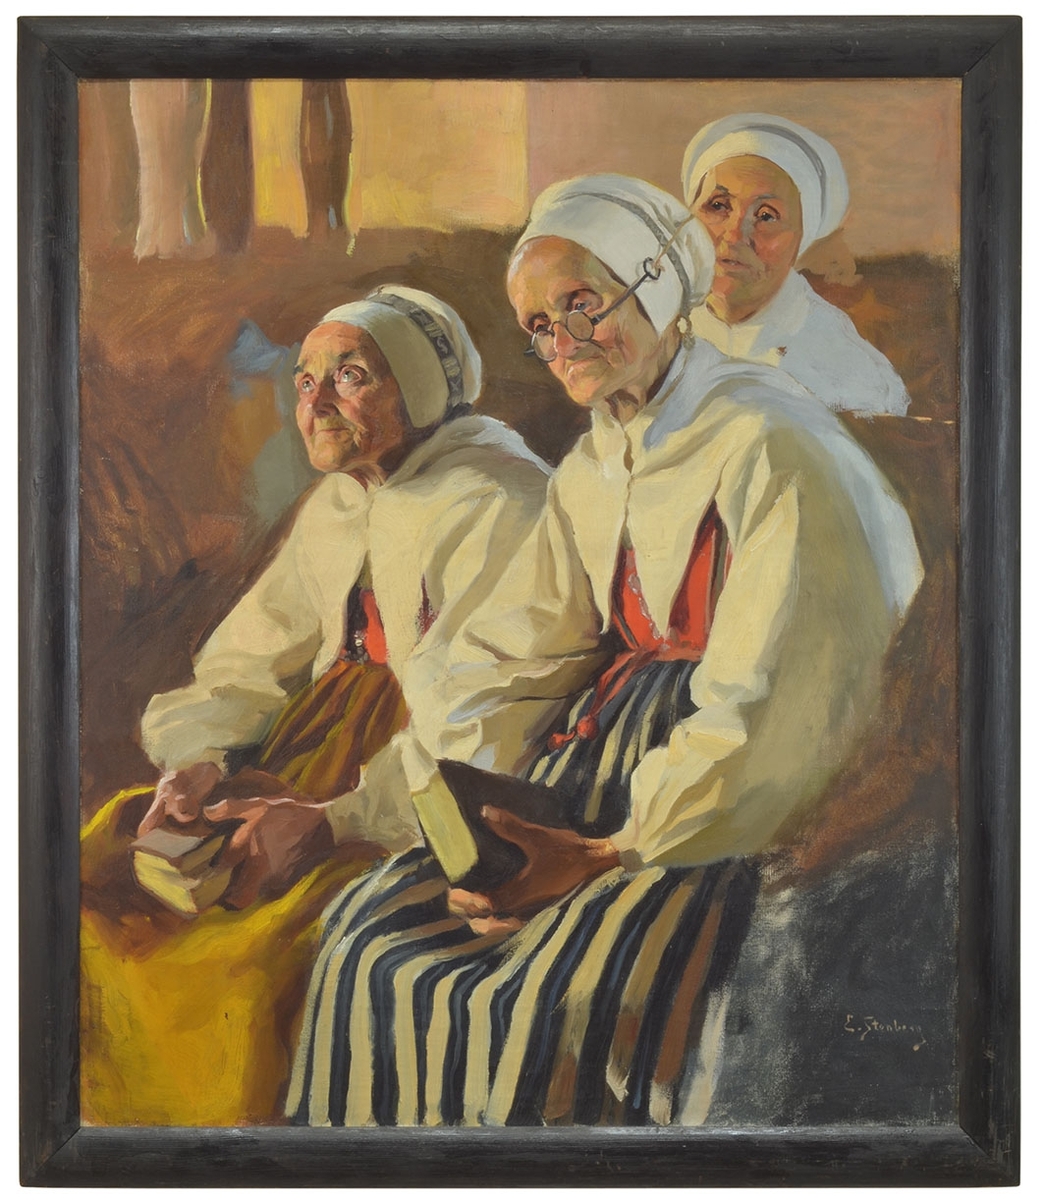 Två gamla kvinnor i Leksandsdräkt sitter i kyrkbänken med psalmbok i händerna och en tredje kvinna bakom.